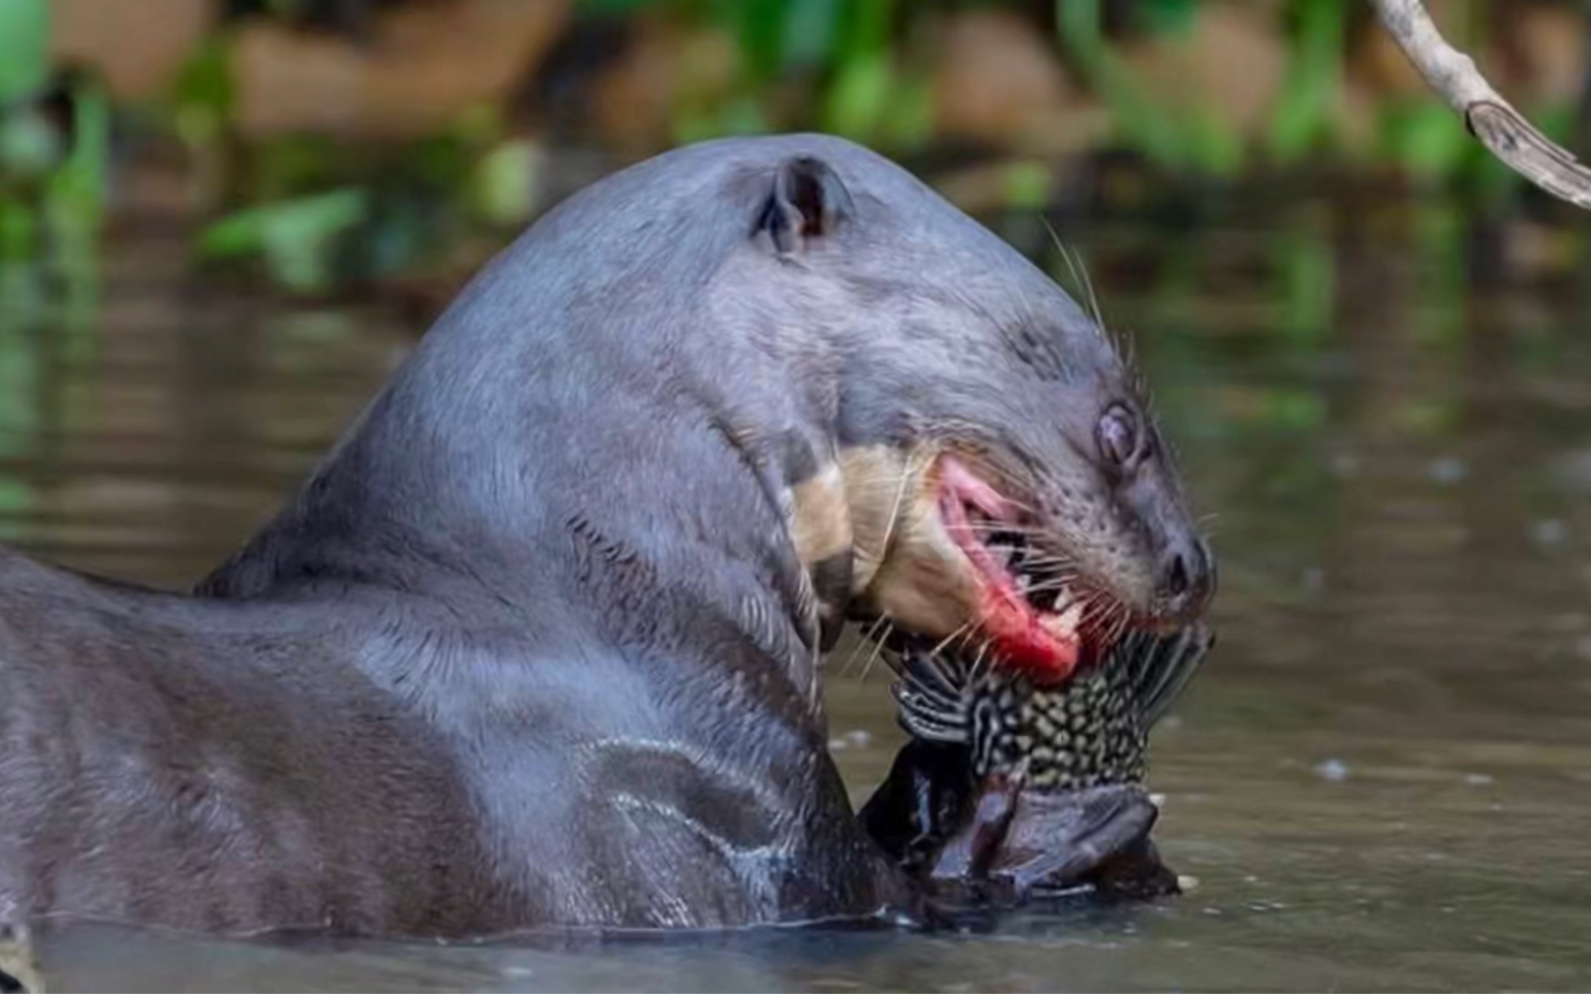 称霸亚马逊河,充满智慧的动物:巨獭!